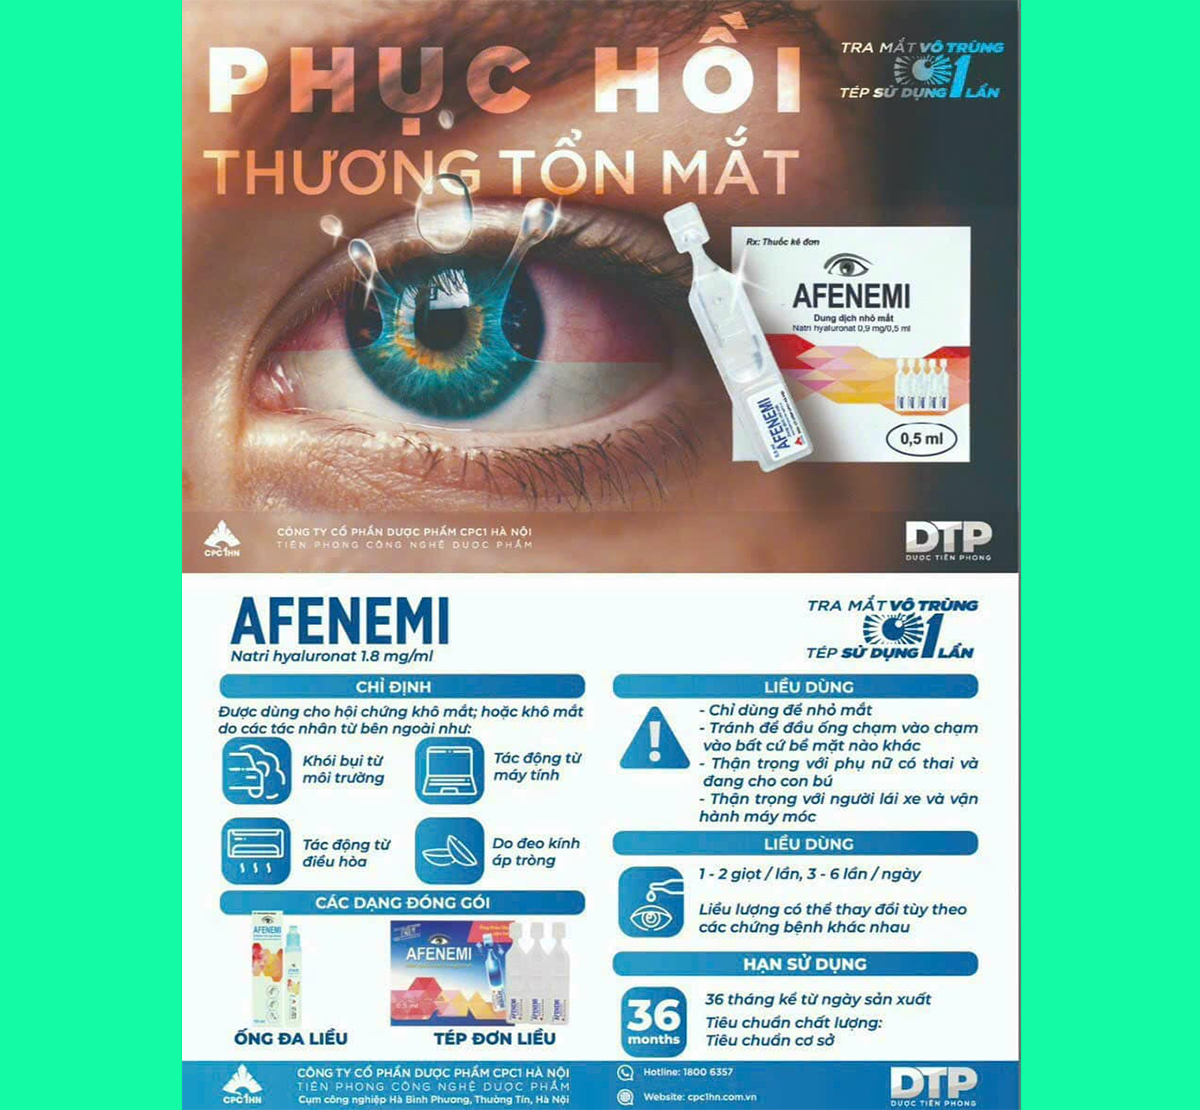 Thuốc Afenemi 0,5ml giúp giảm khô mắt